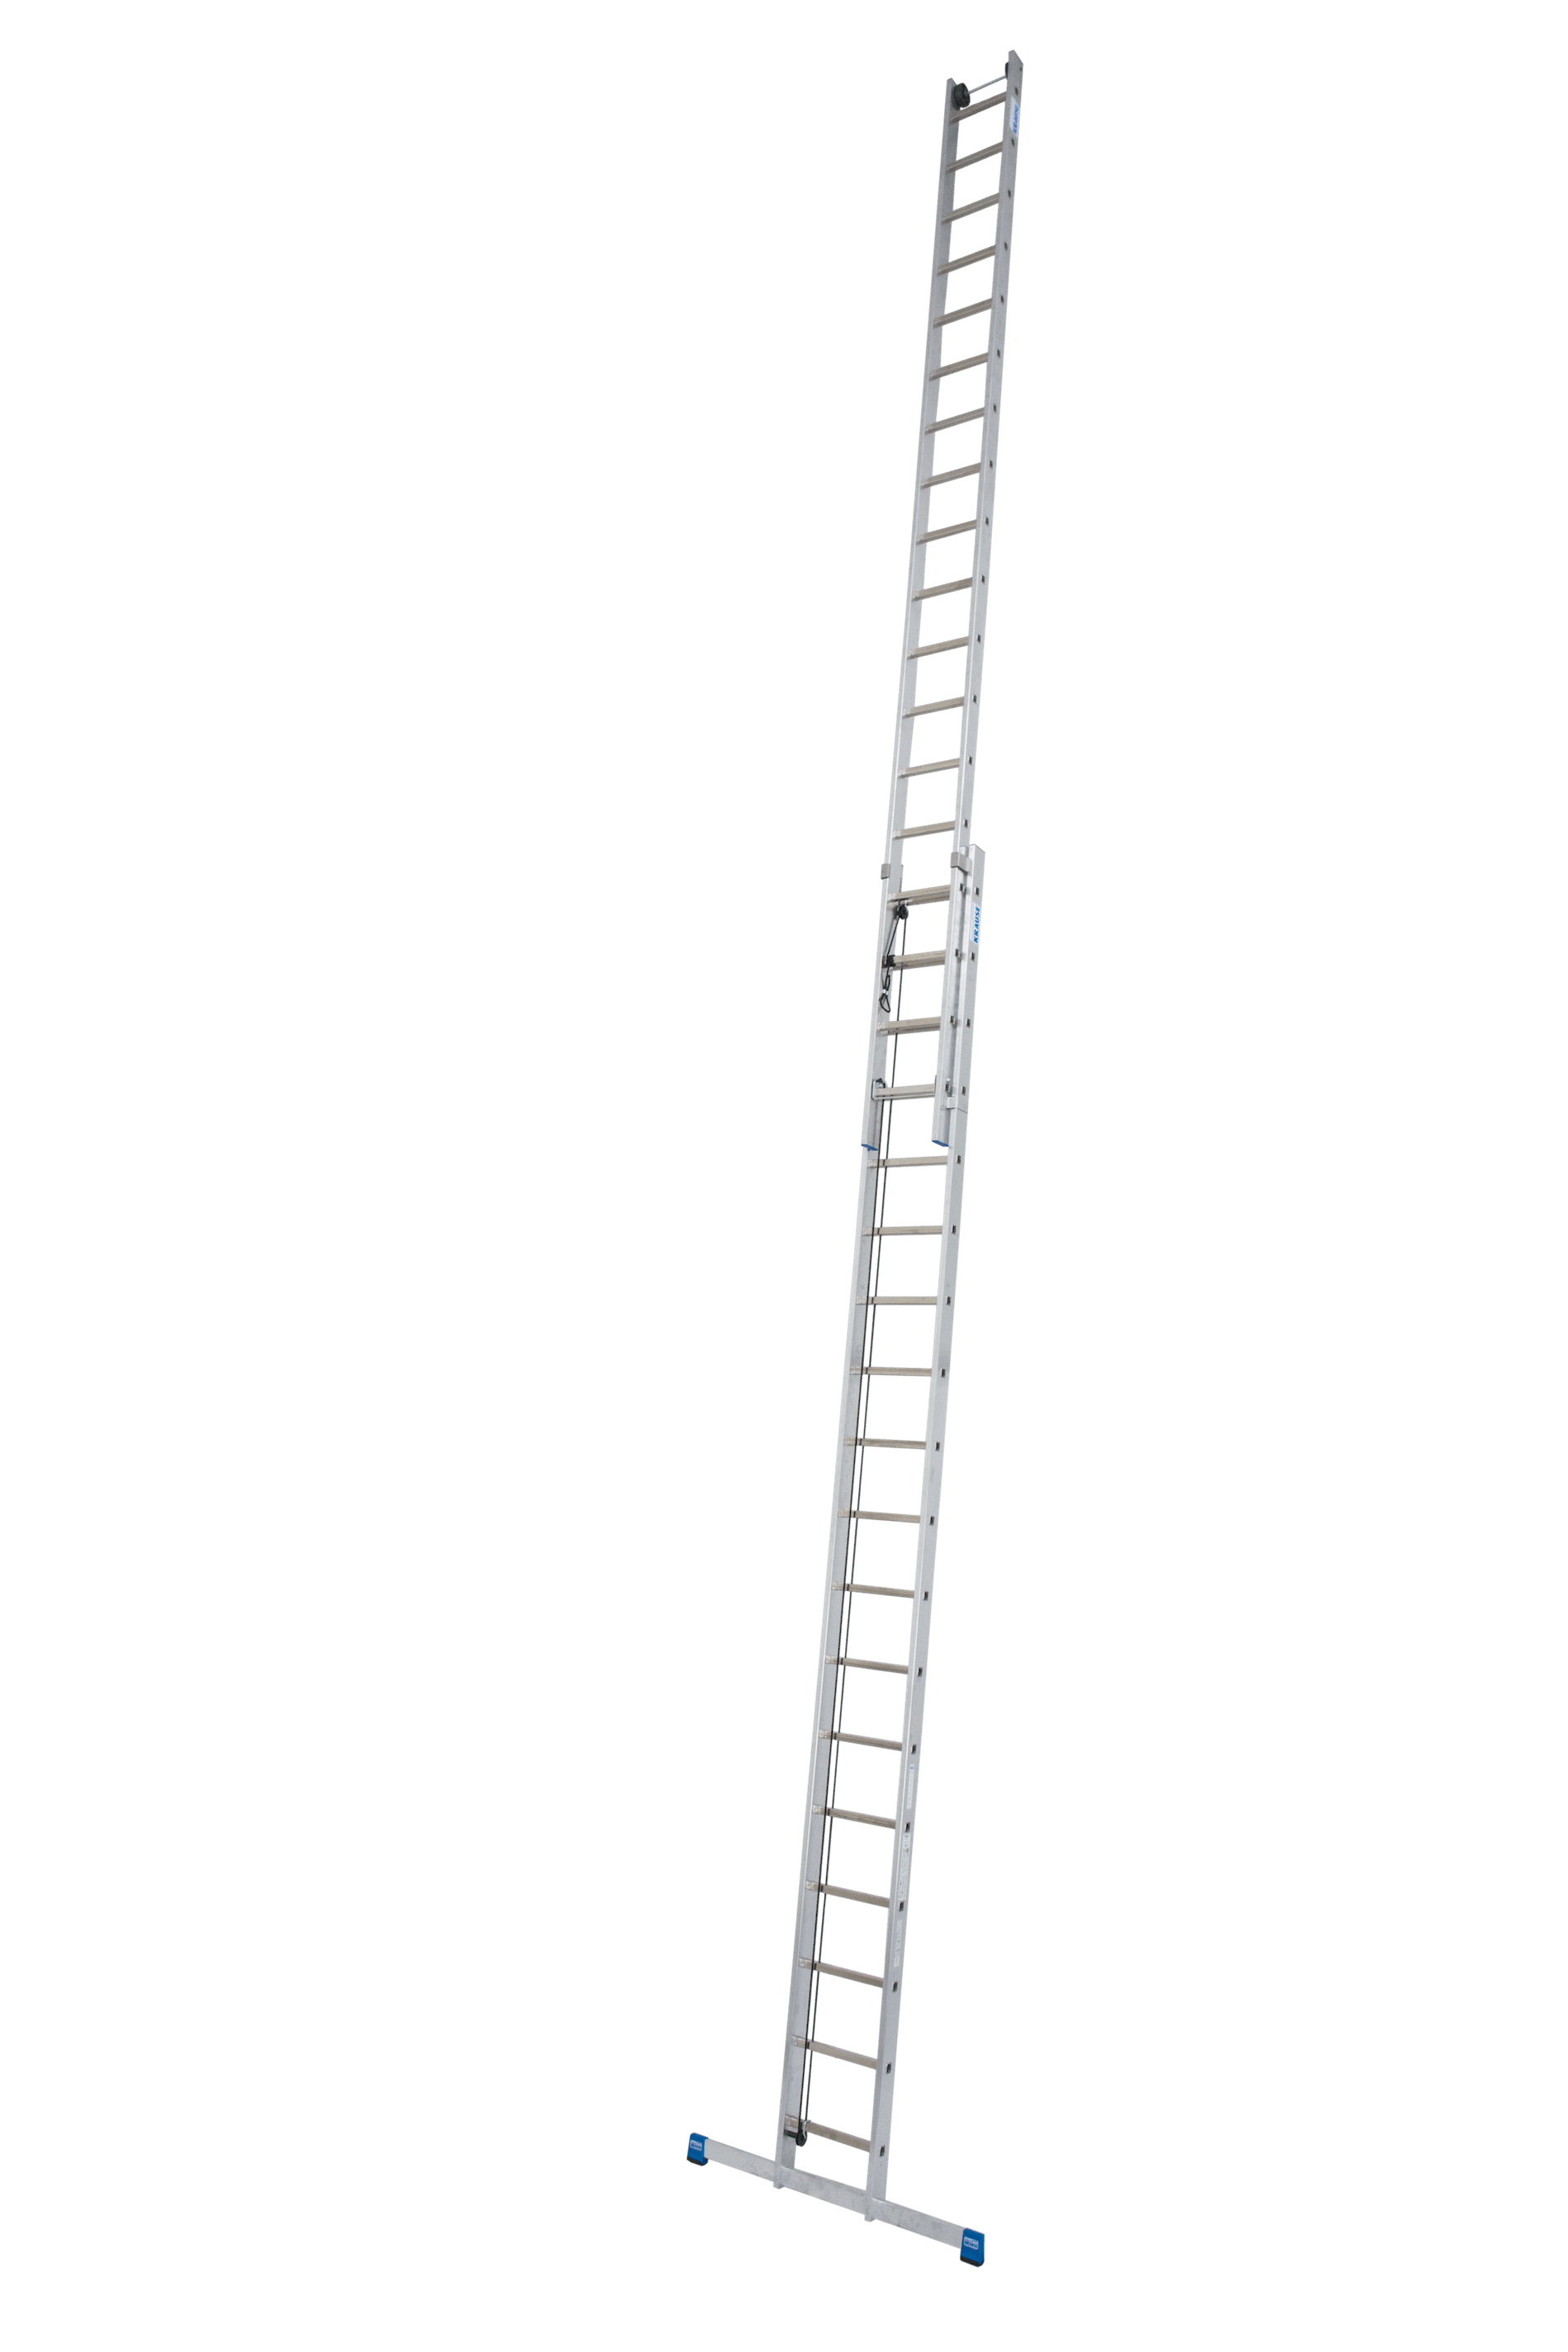 Stabilo Sprossen-Seilzugleiter, dreiteilig 3x18 Sprossen/Stufen